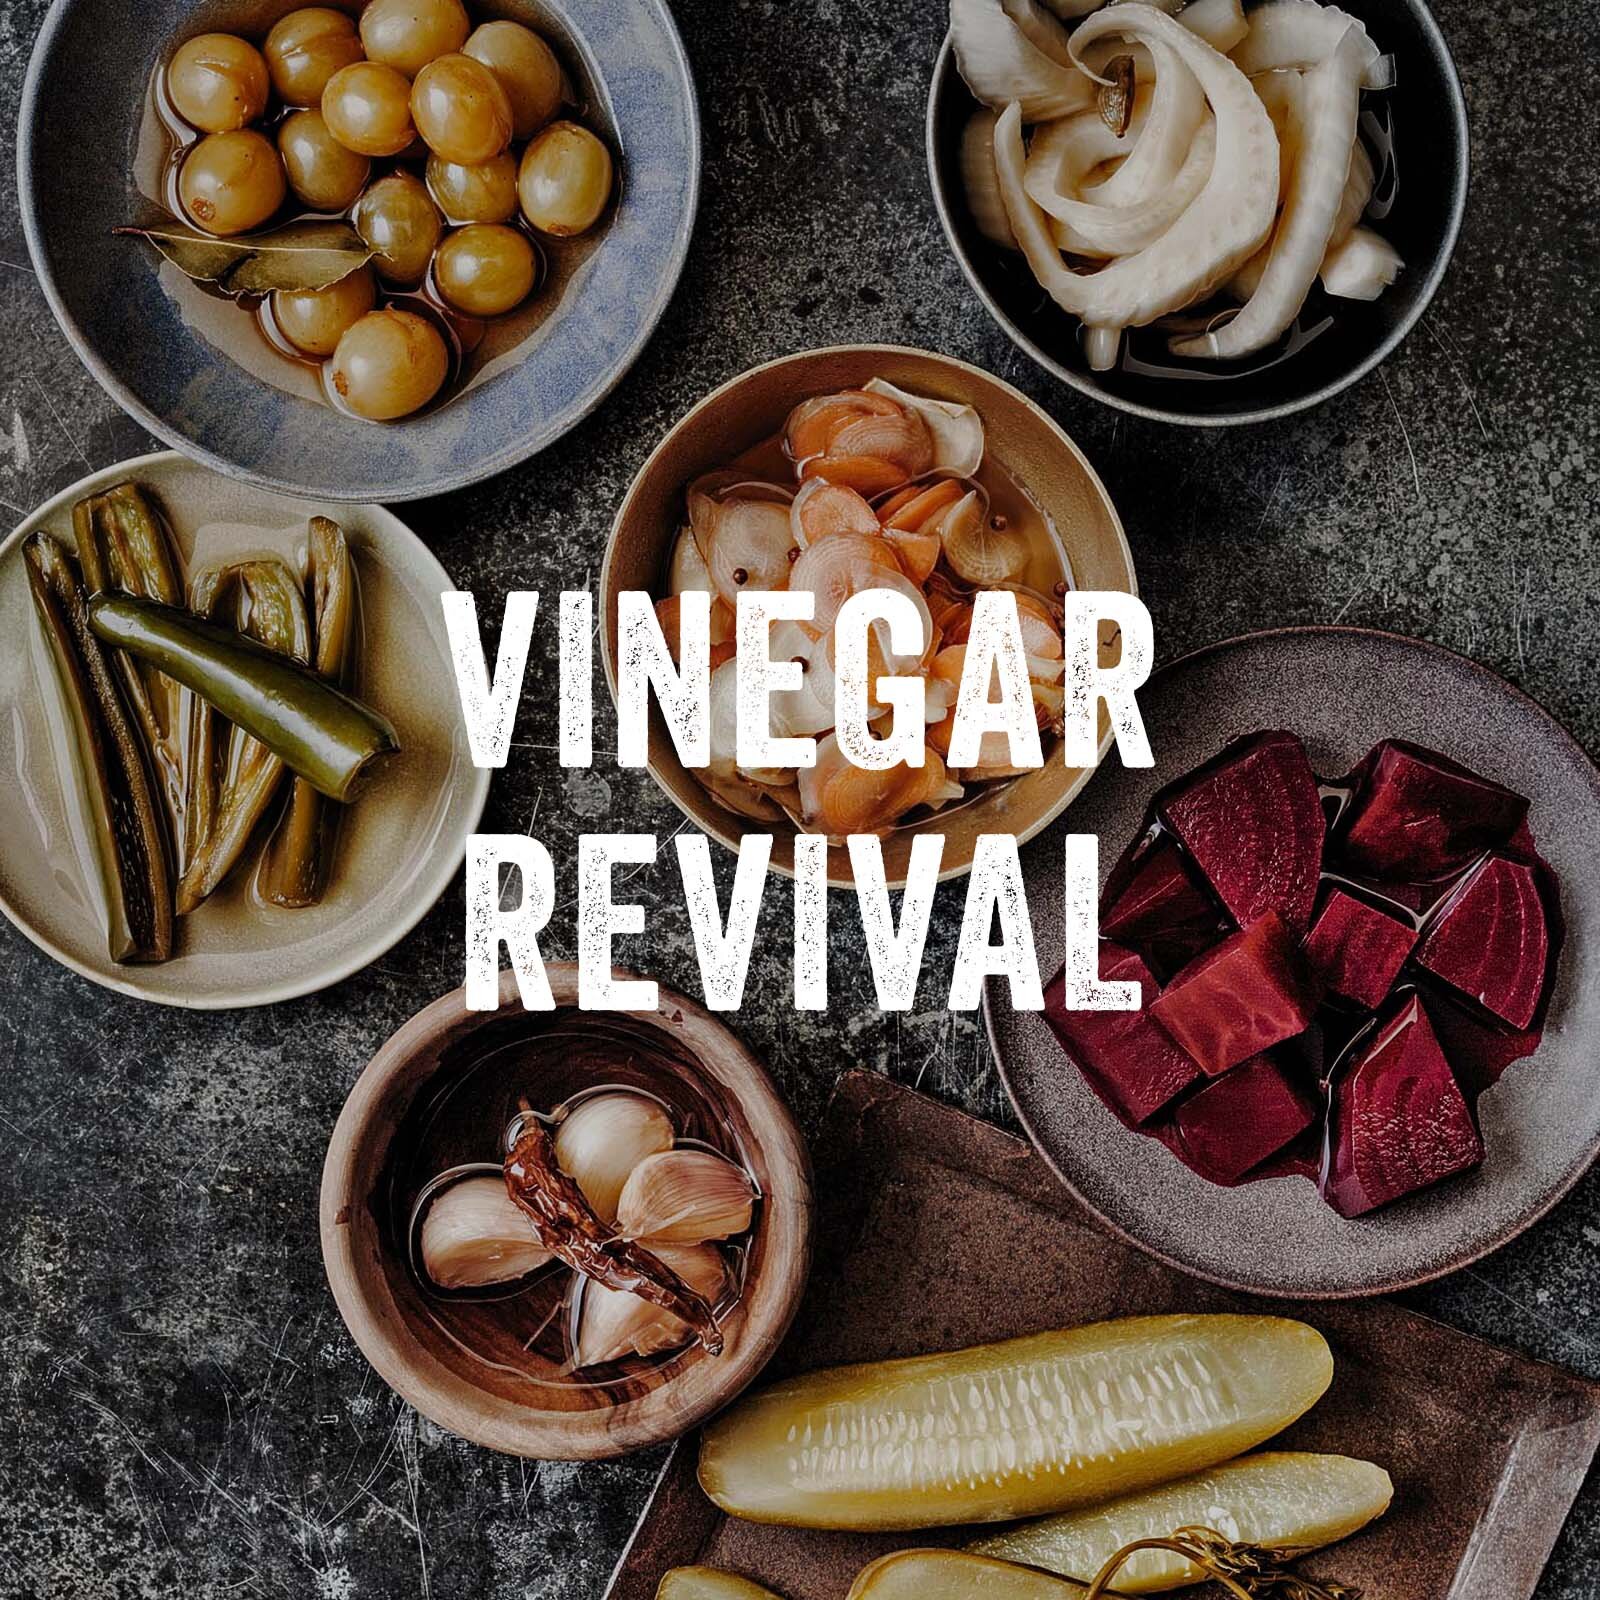 VinegarRevival_Title.jpg